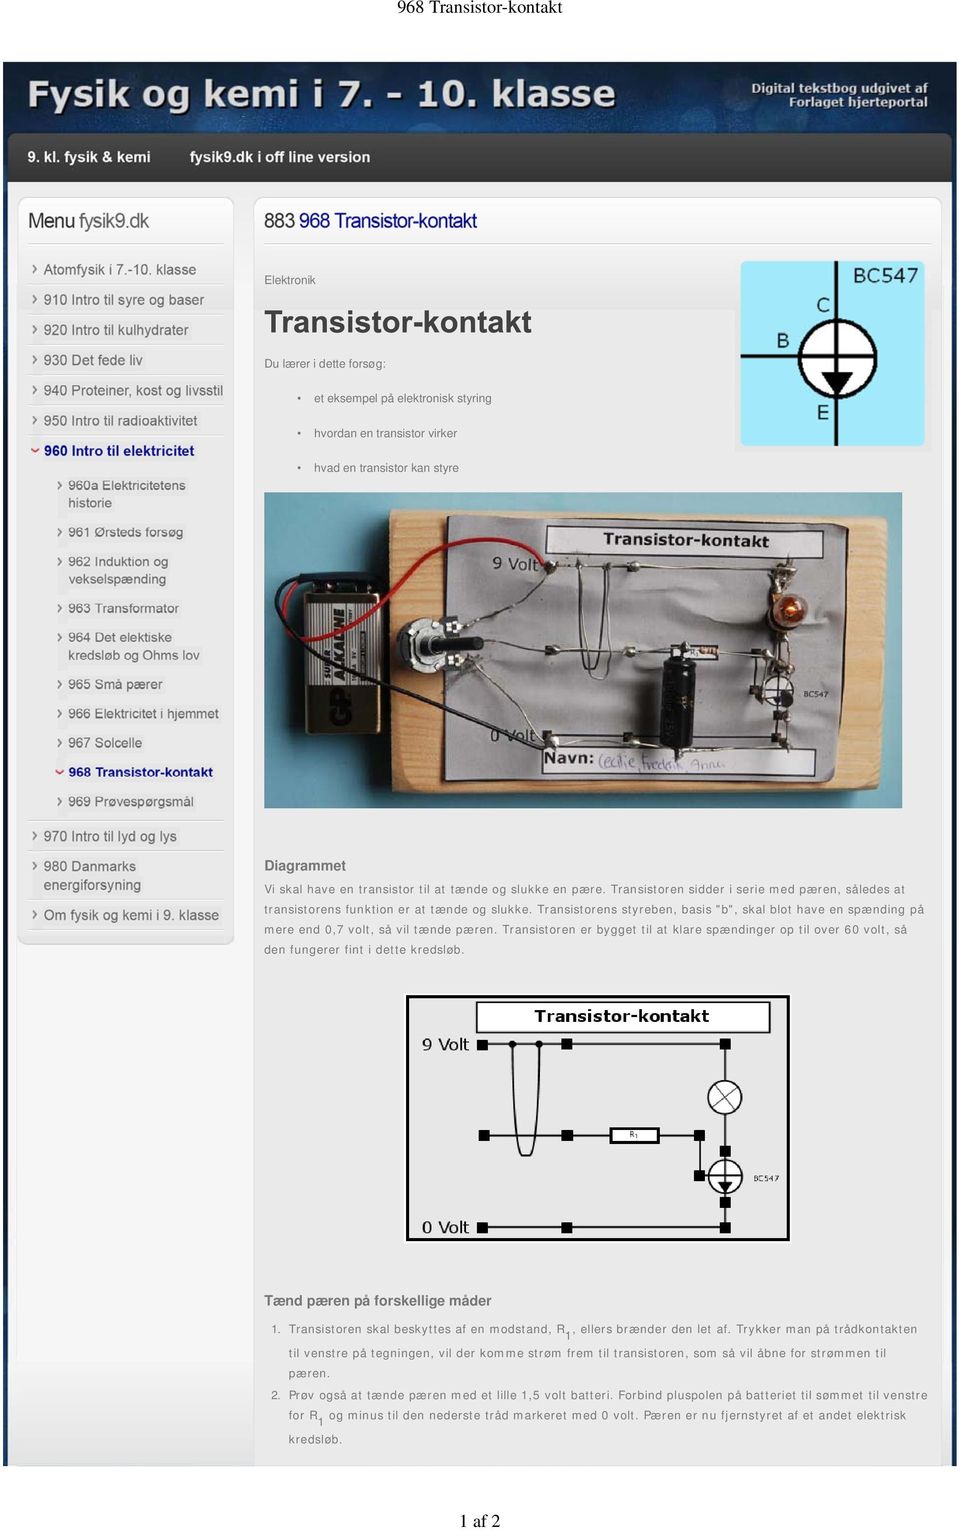 Transistorens styreben, basis "b", skal blot have en spænding på mere end 0,7 volt, så vil tænde pæren.